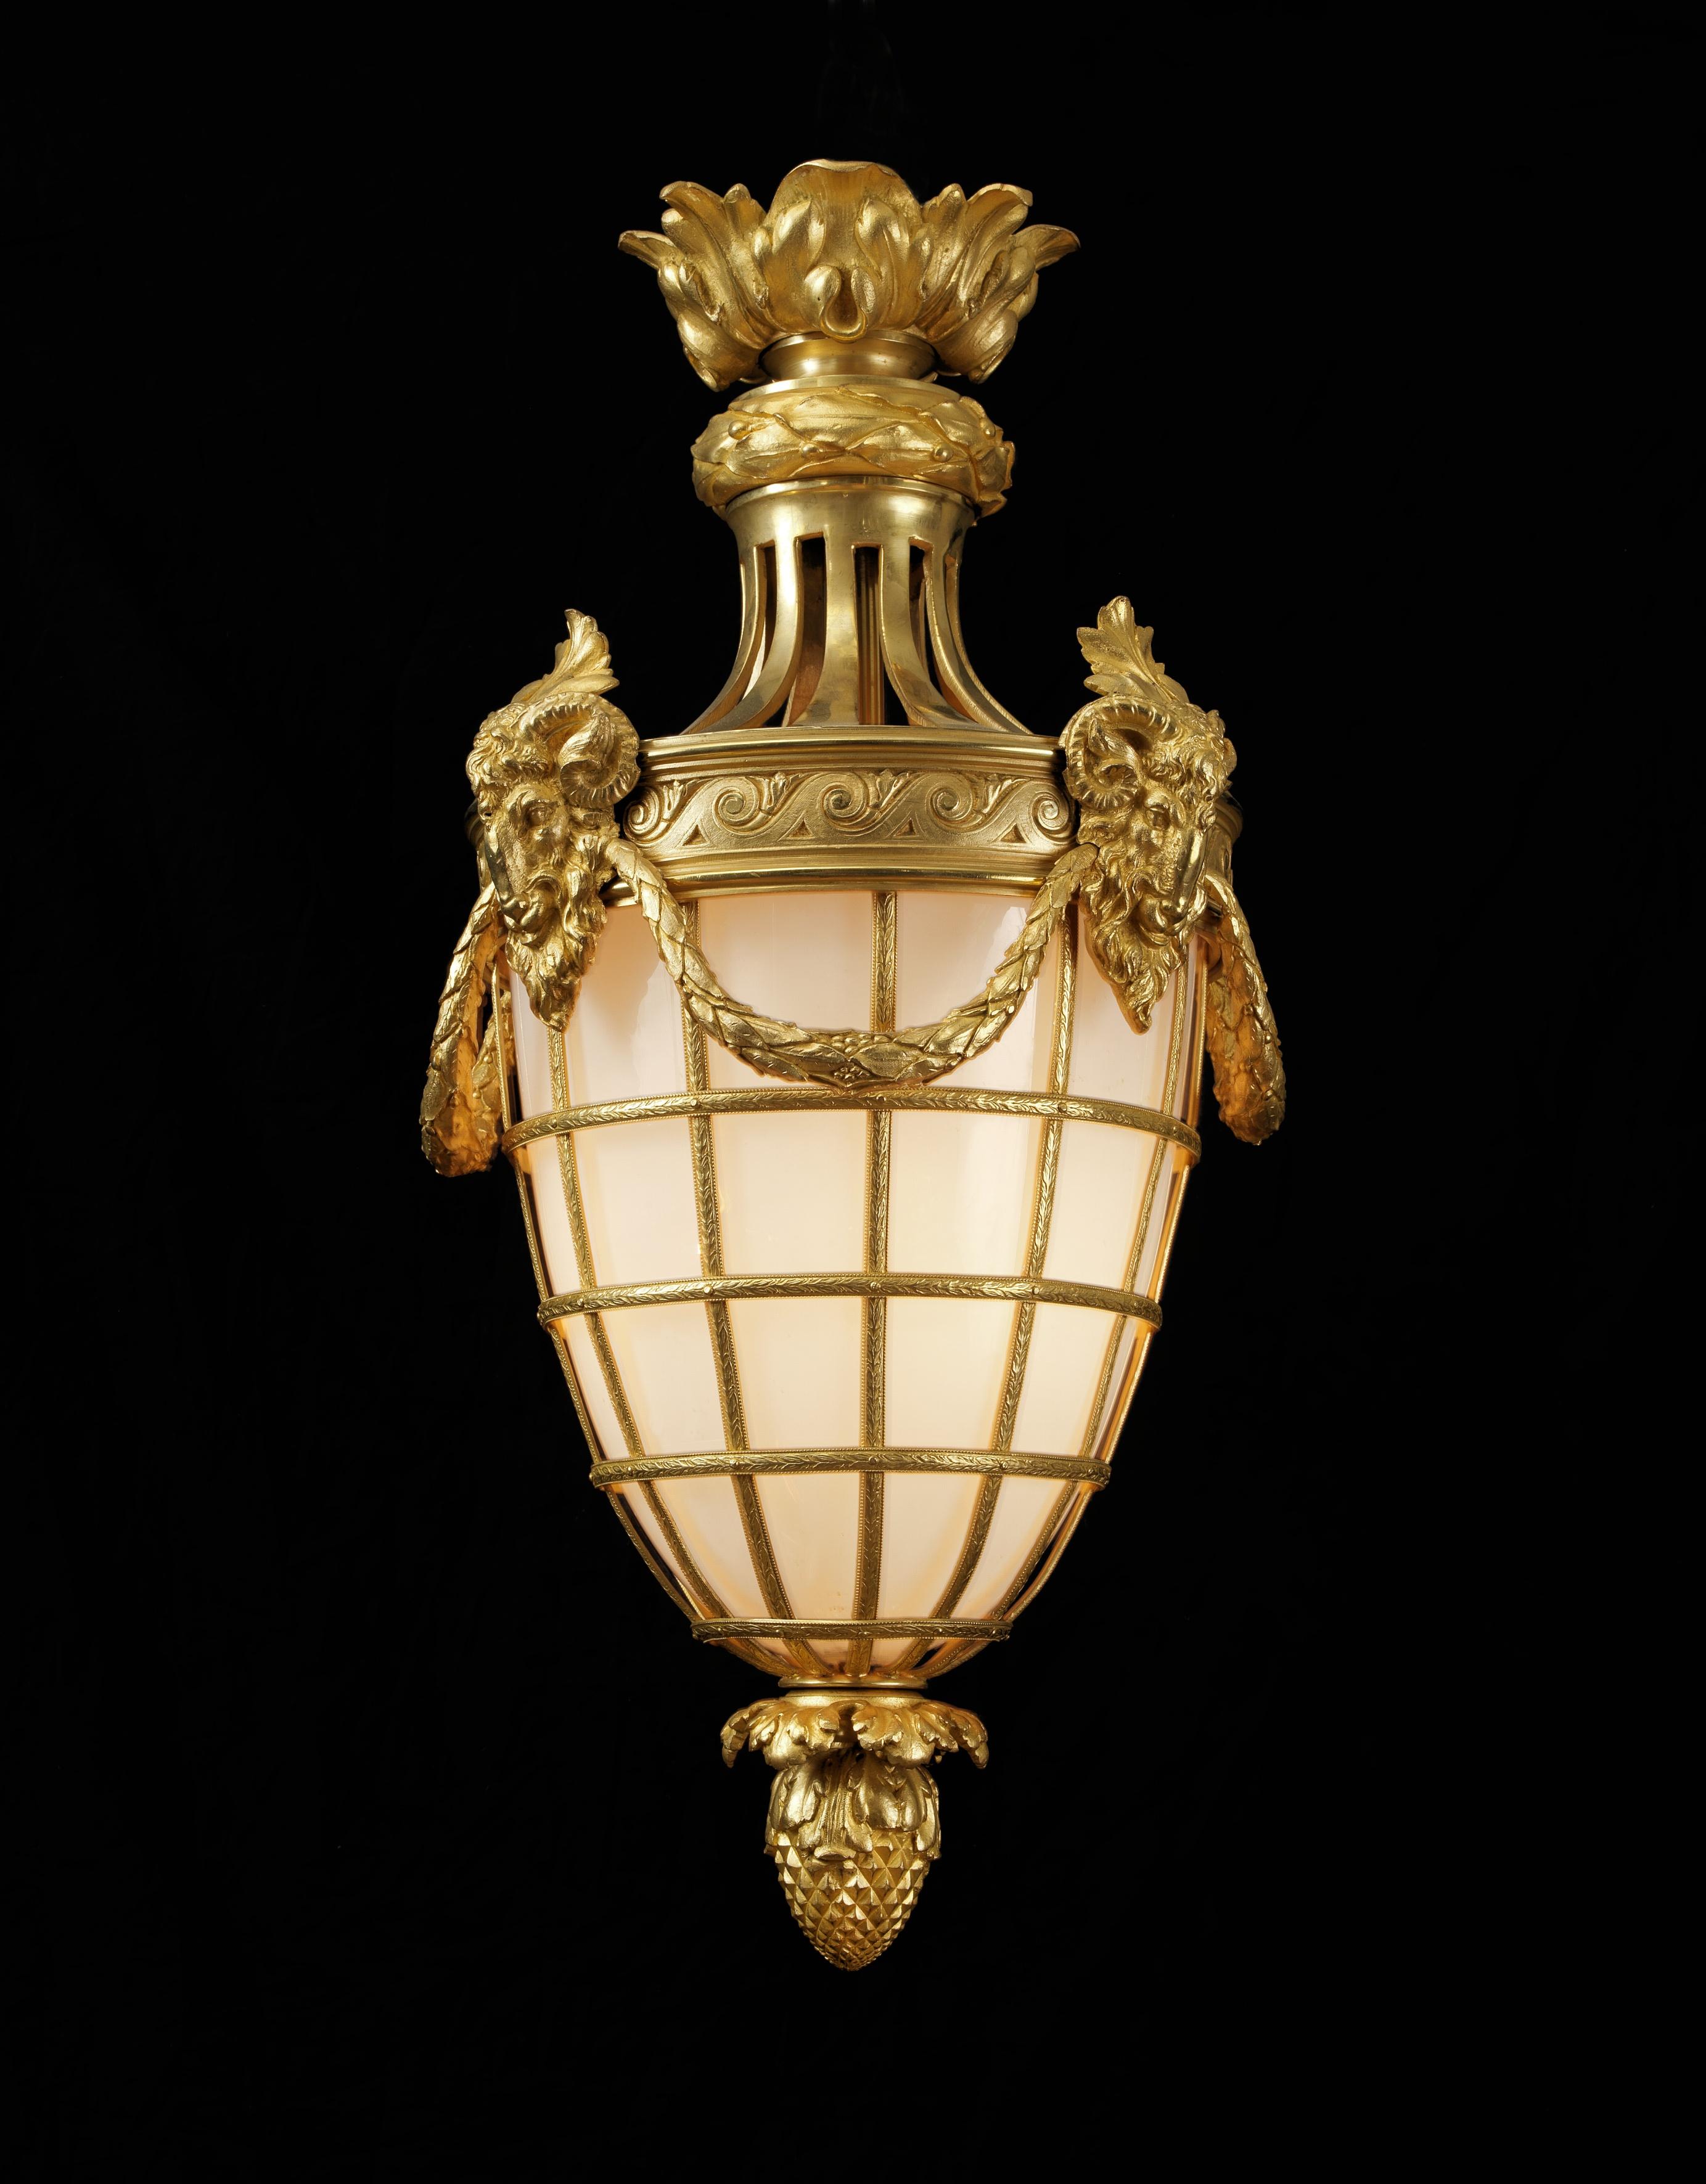 A fine Louis XVI style gilt bronze lantern.

French, circa 1900.